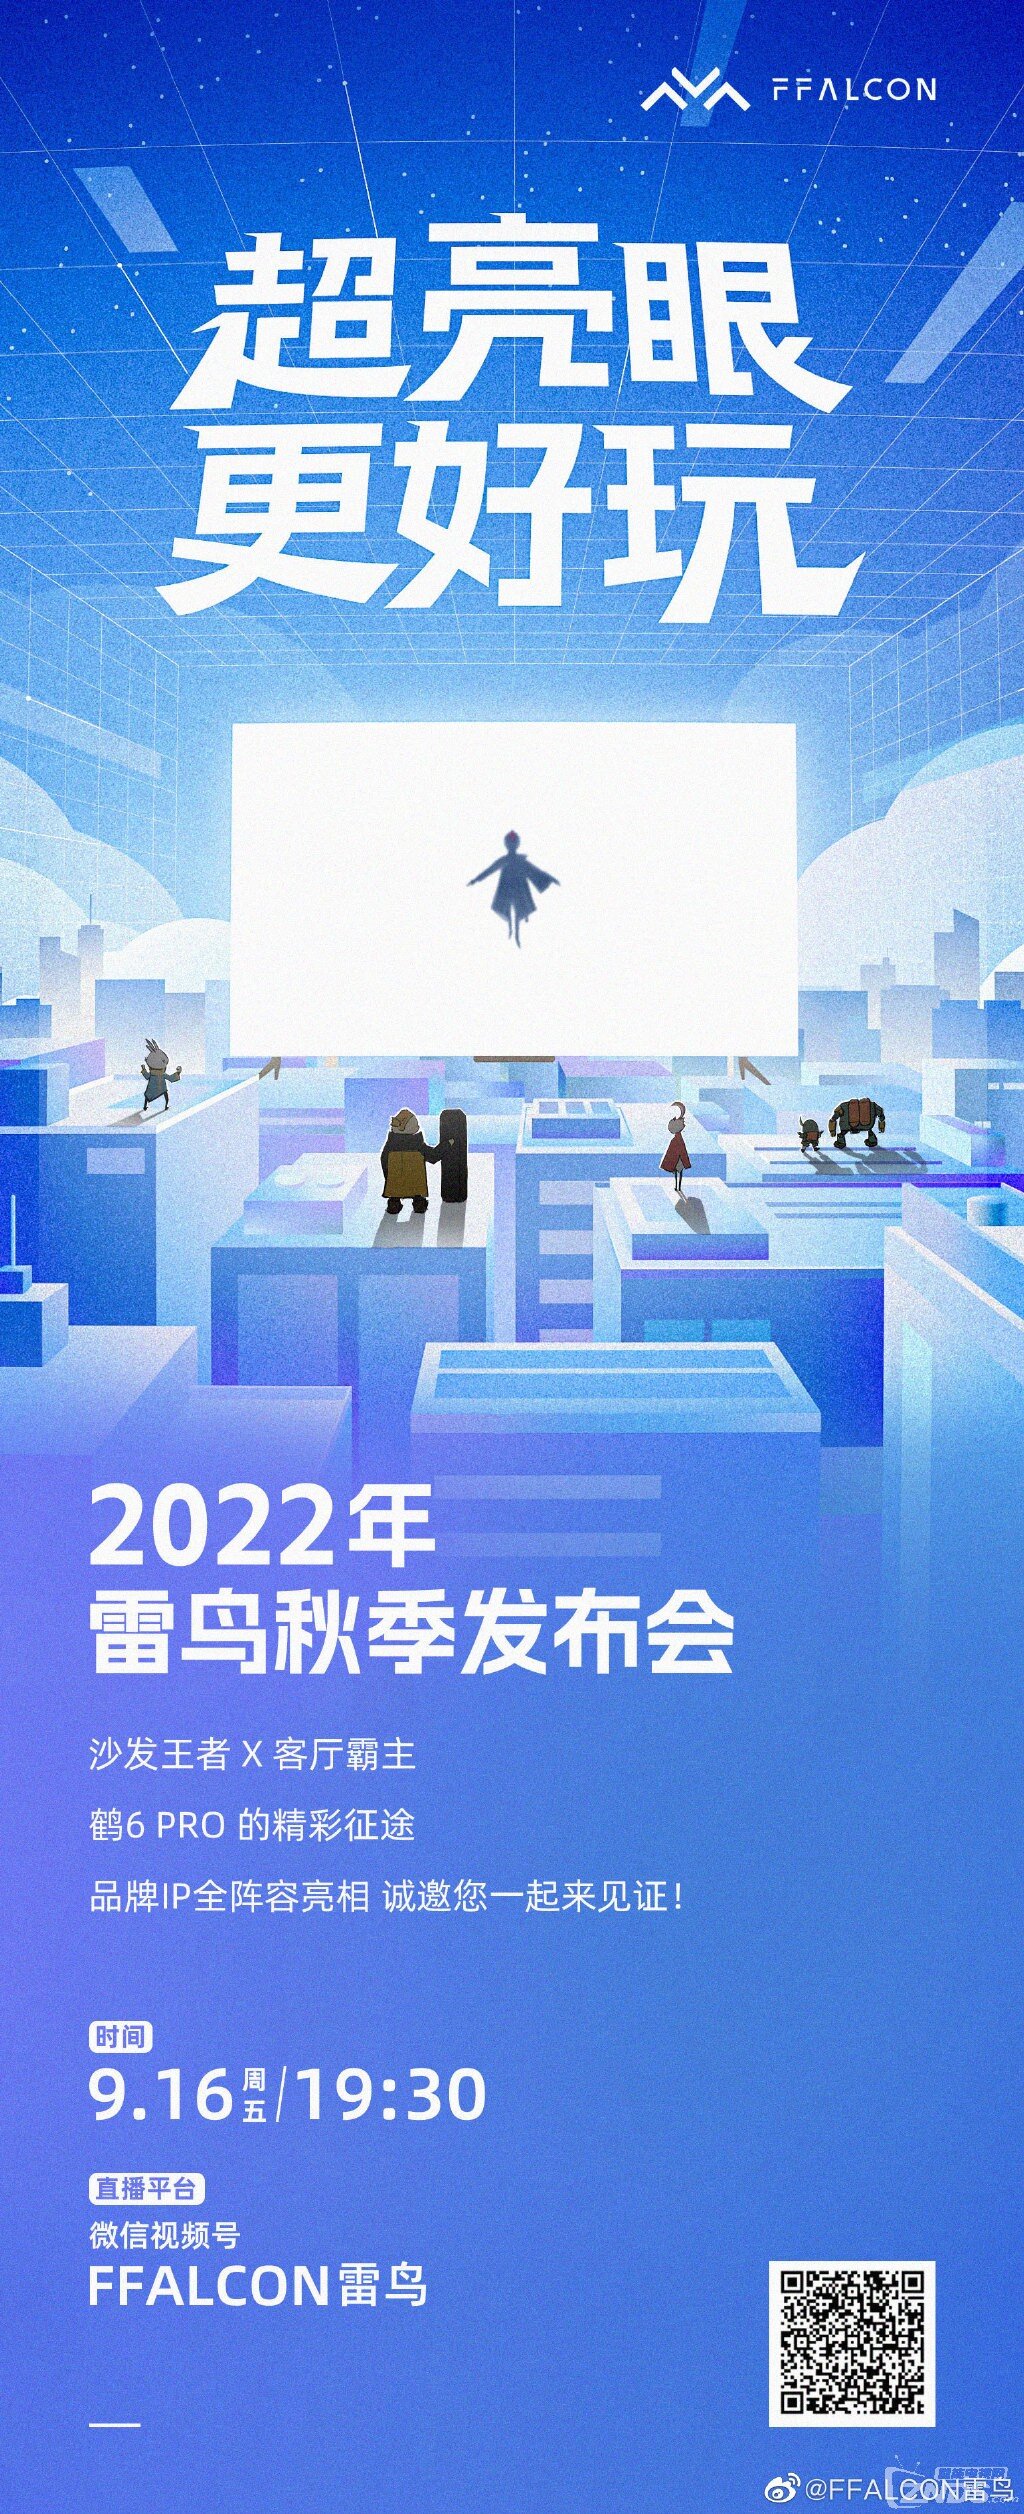 2022年雷鸟秋季暨雷鸟鹤6 Pro电视发布会